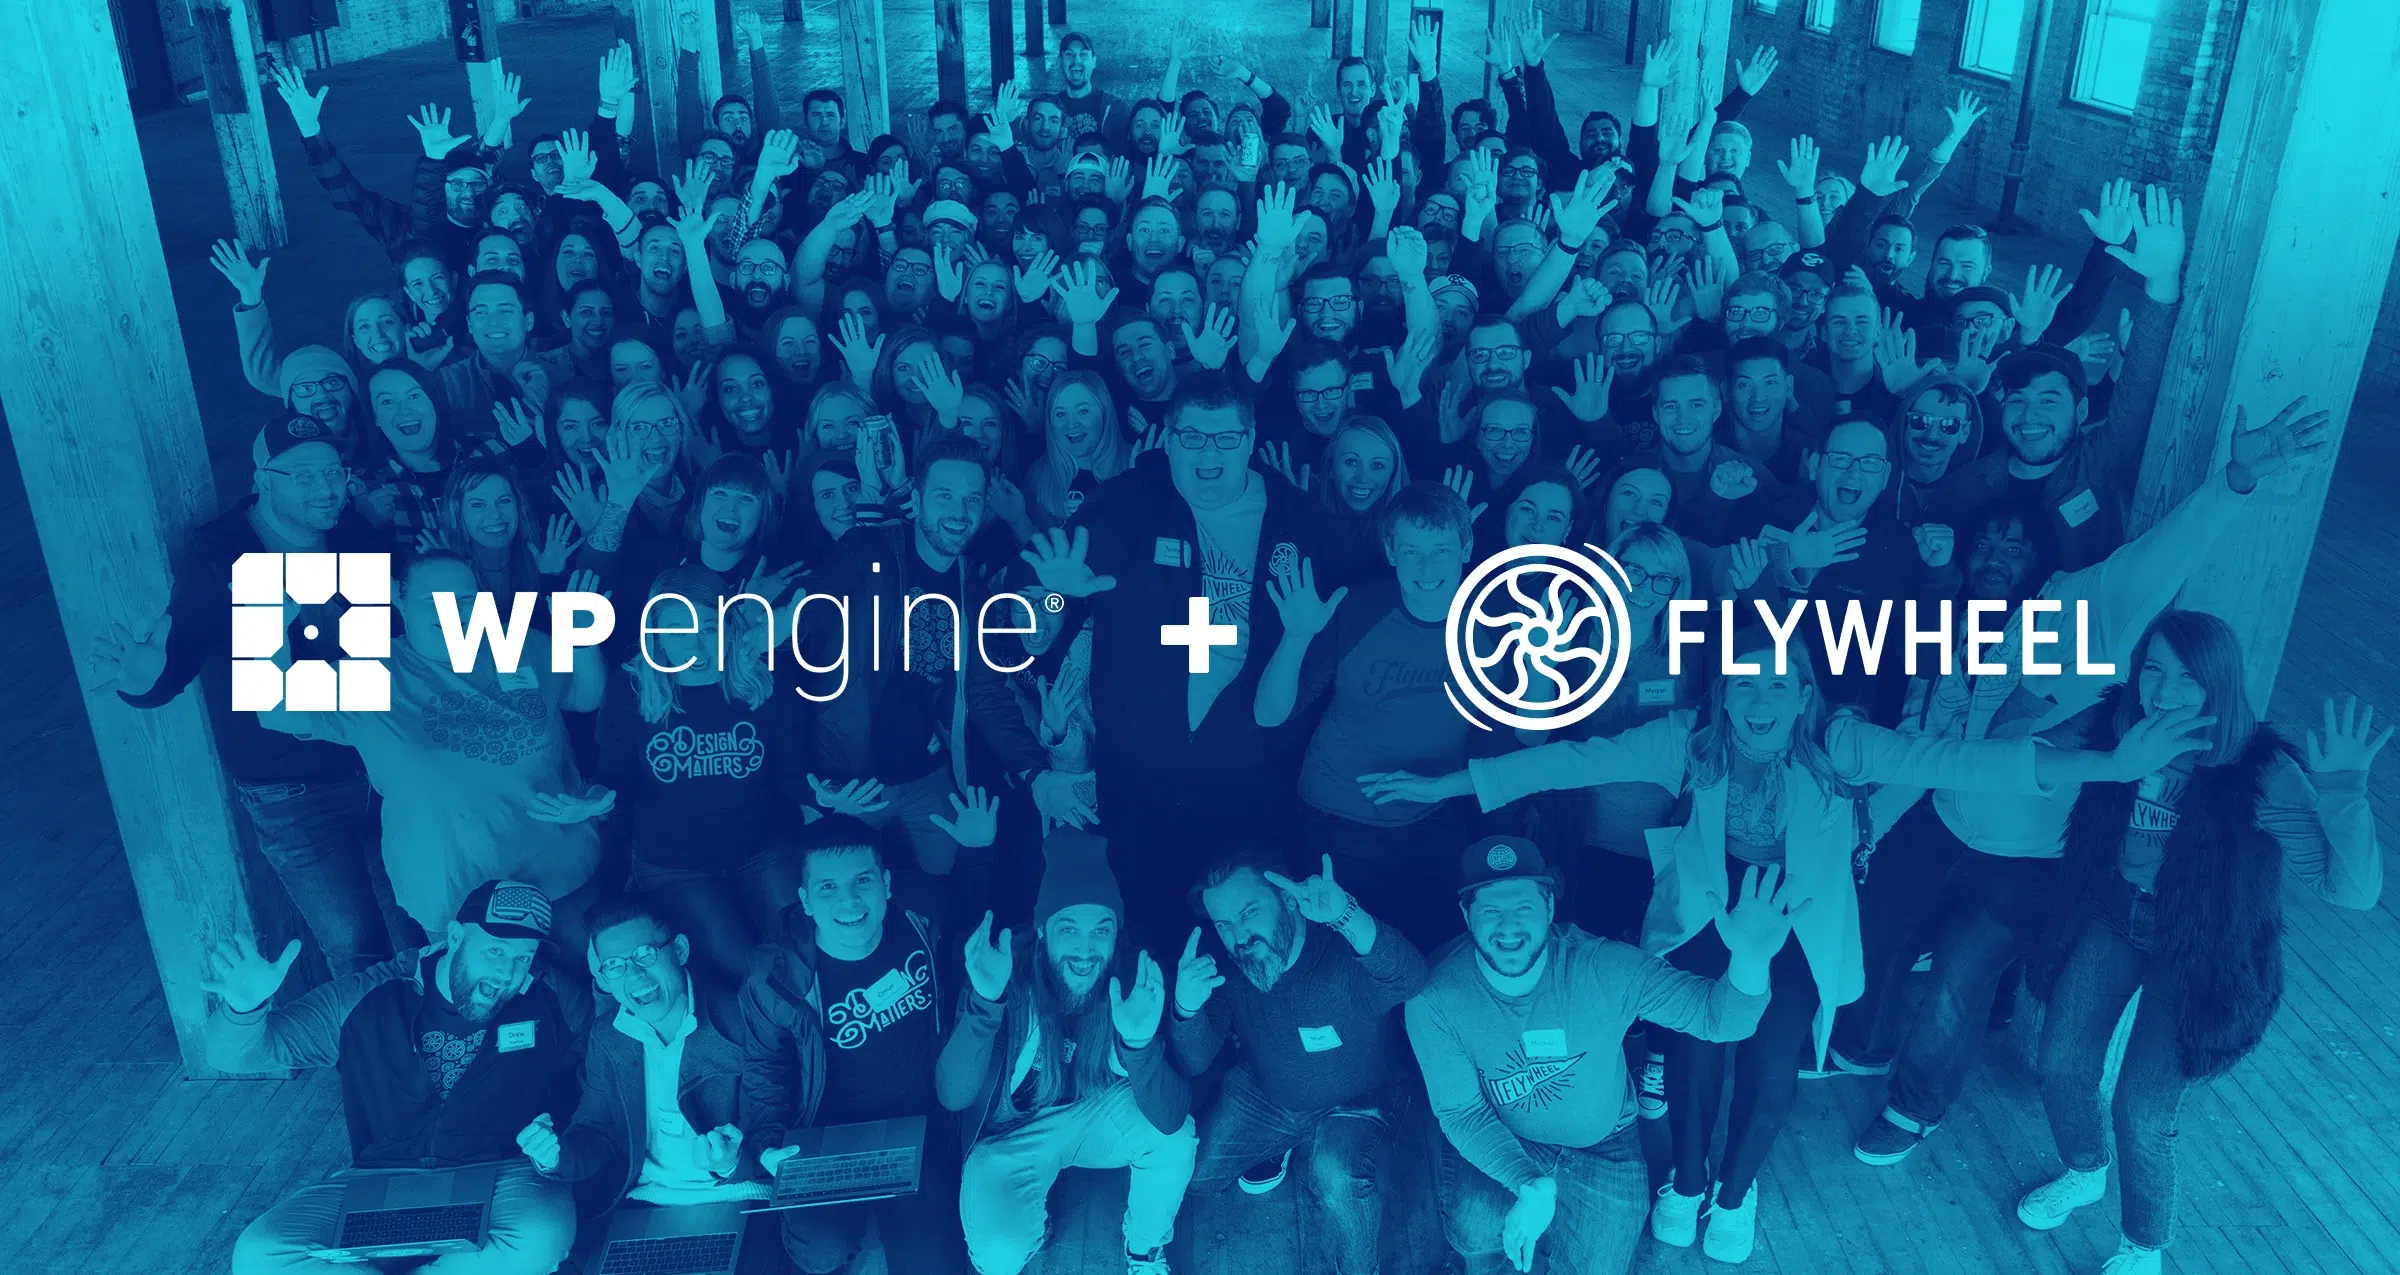 WP Engine_Flywheel_employees_logo_lockup